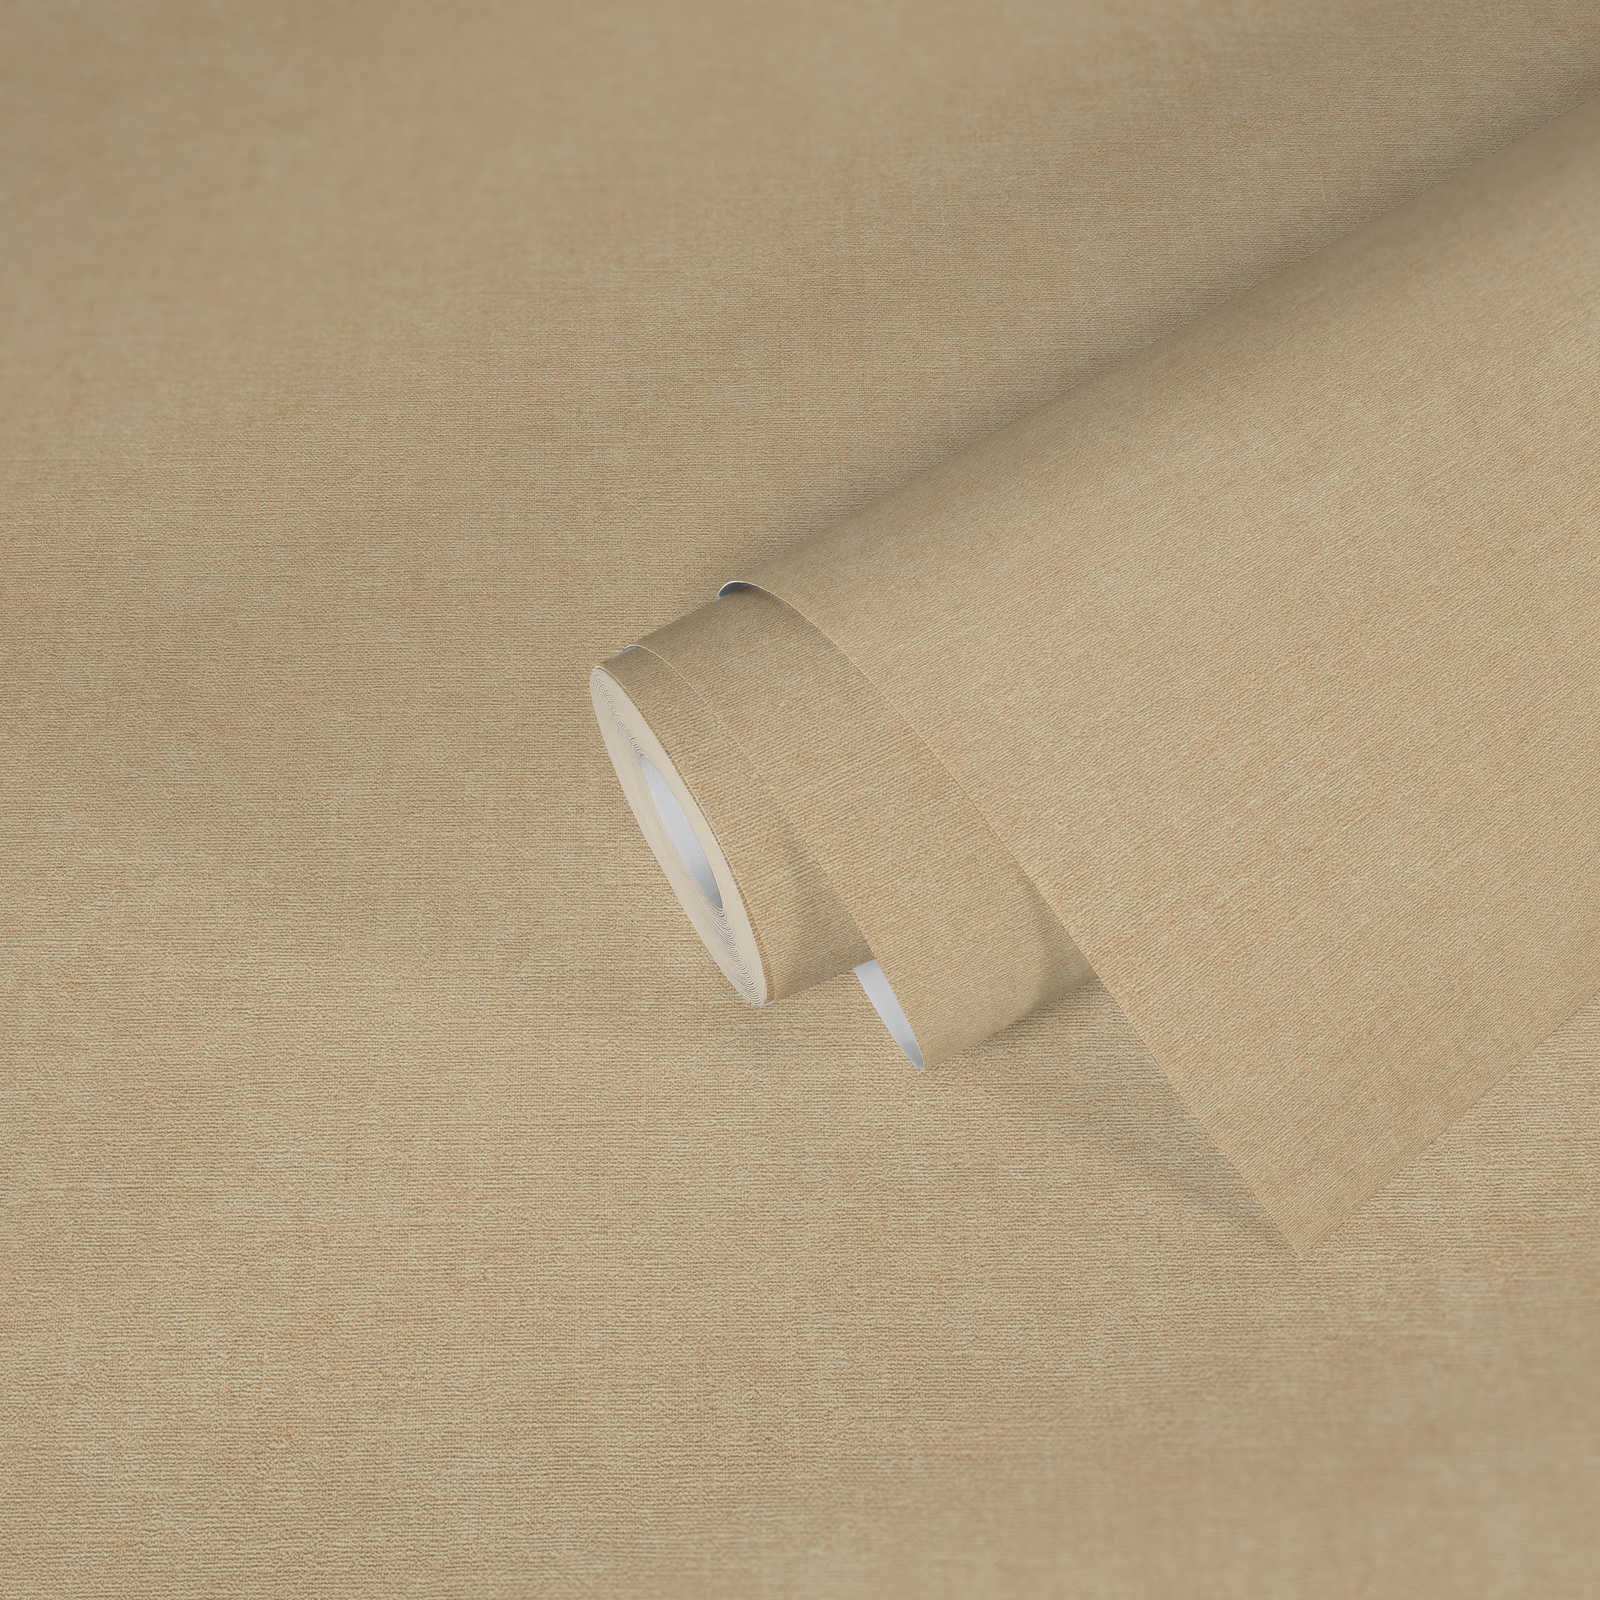             Carta da parati monocolore in tessuto non tessuto in look tessile - beige, marrone
        